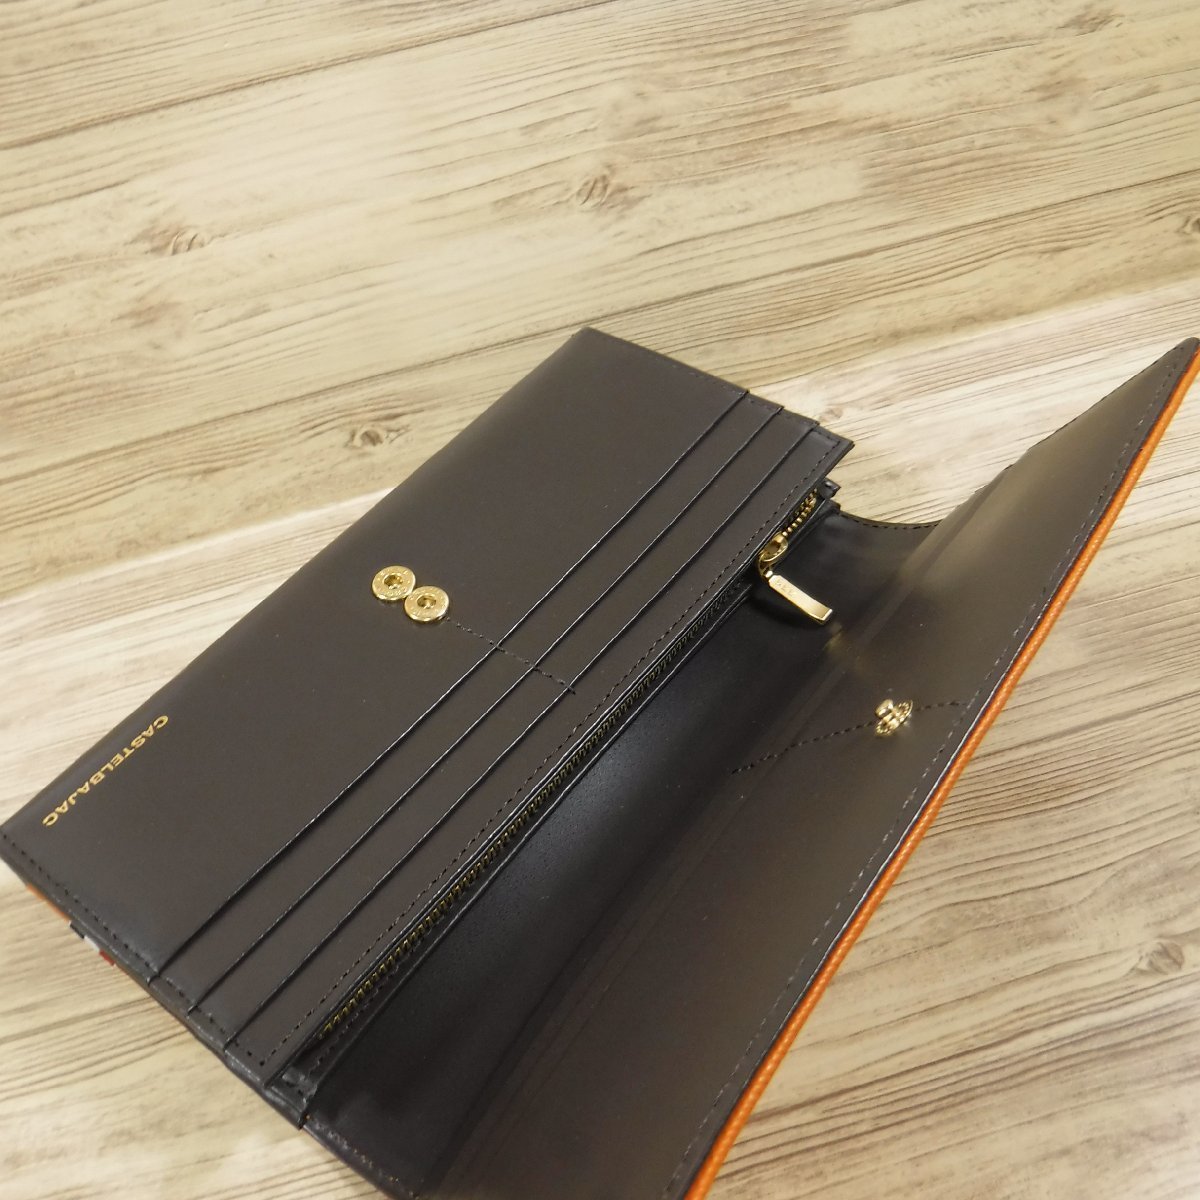 QQ839 Castelbajac новый товар обычная цена 15400 иен большая вместимость длинный кошелек safia-no style телячья кожа бумажник orange she -тактный 027604